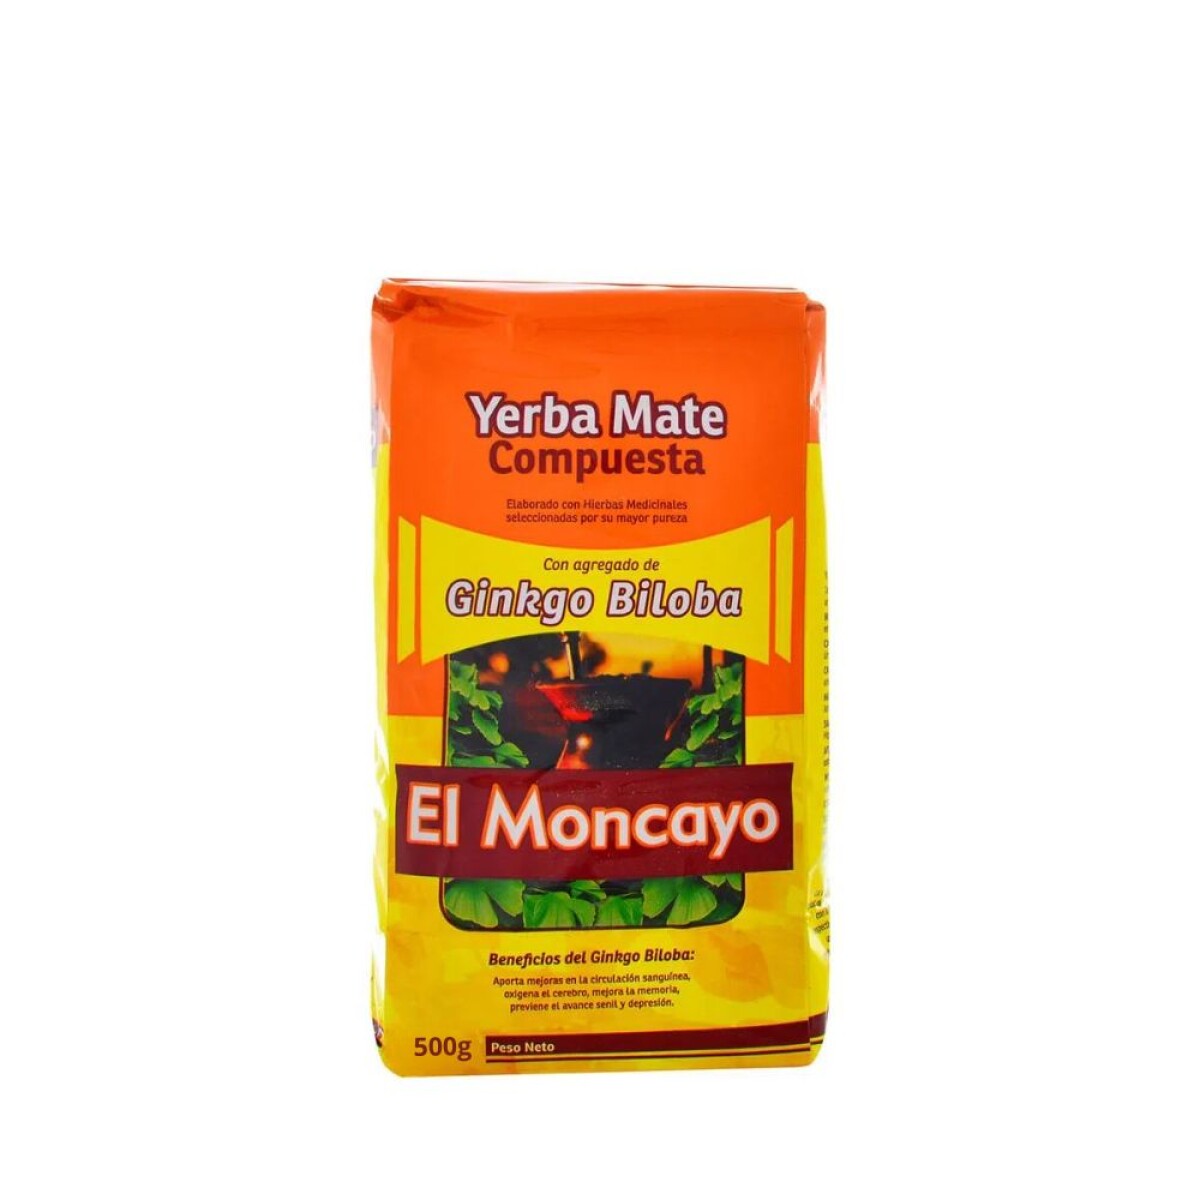 Yerba compuesta con ginkgo 500g El Moncayo 